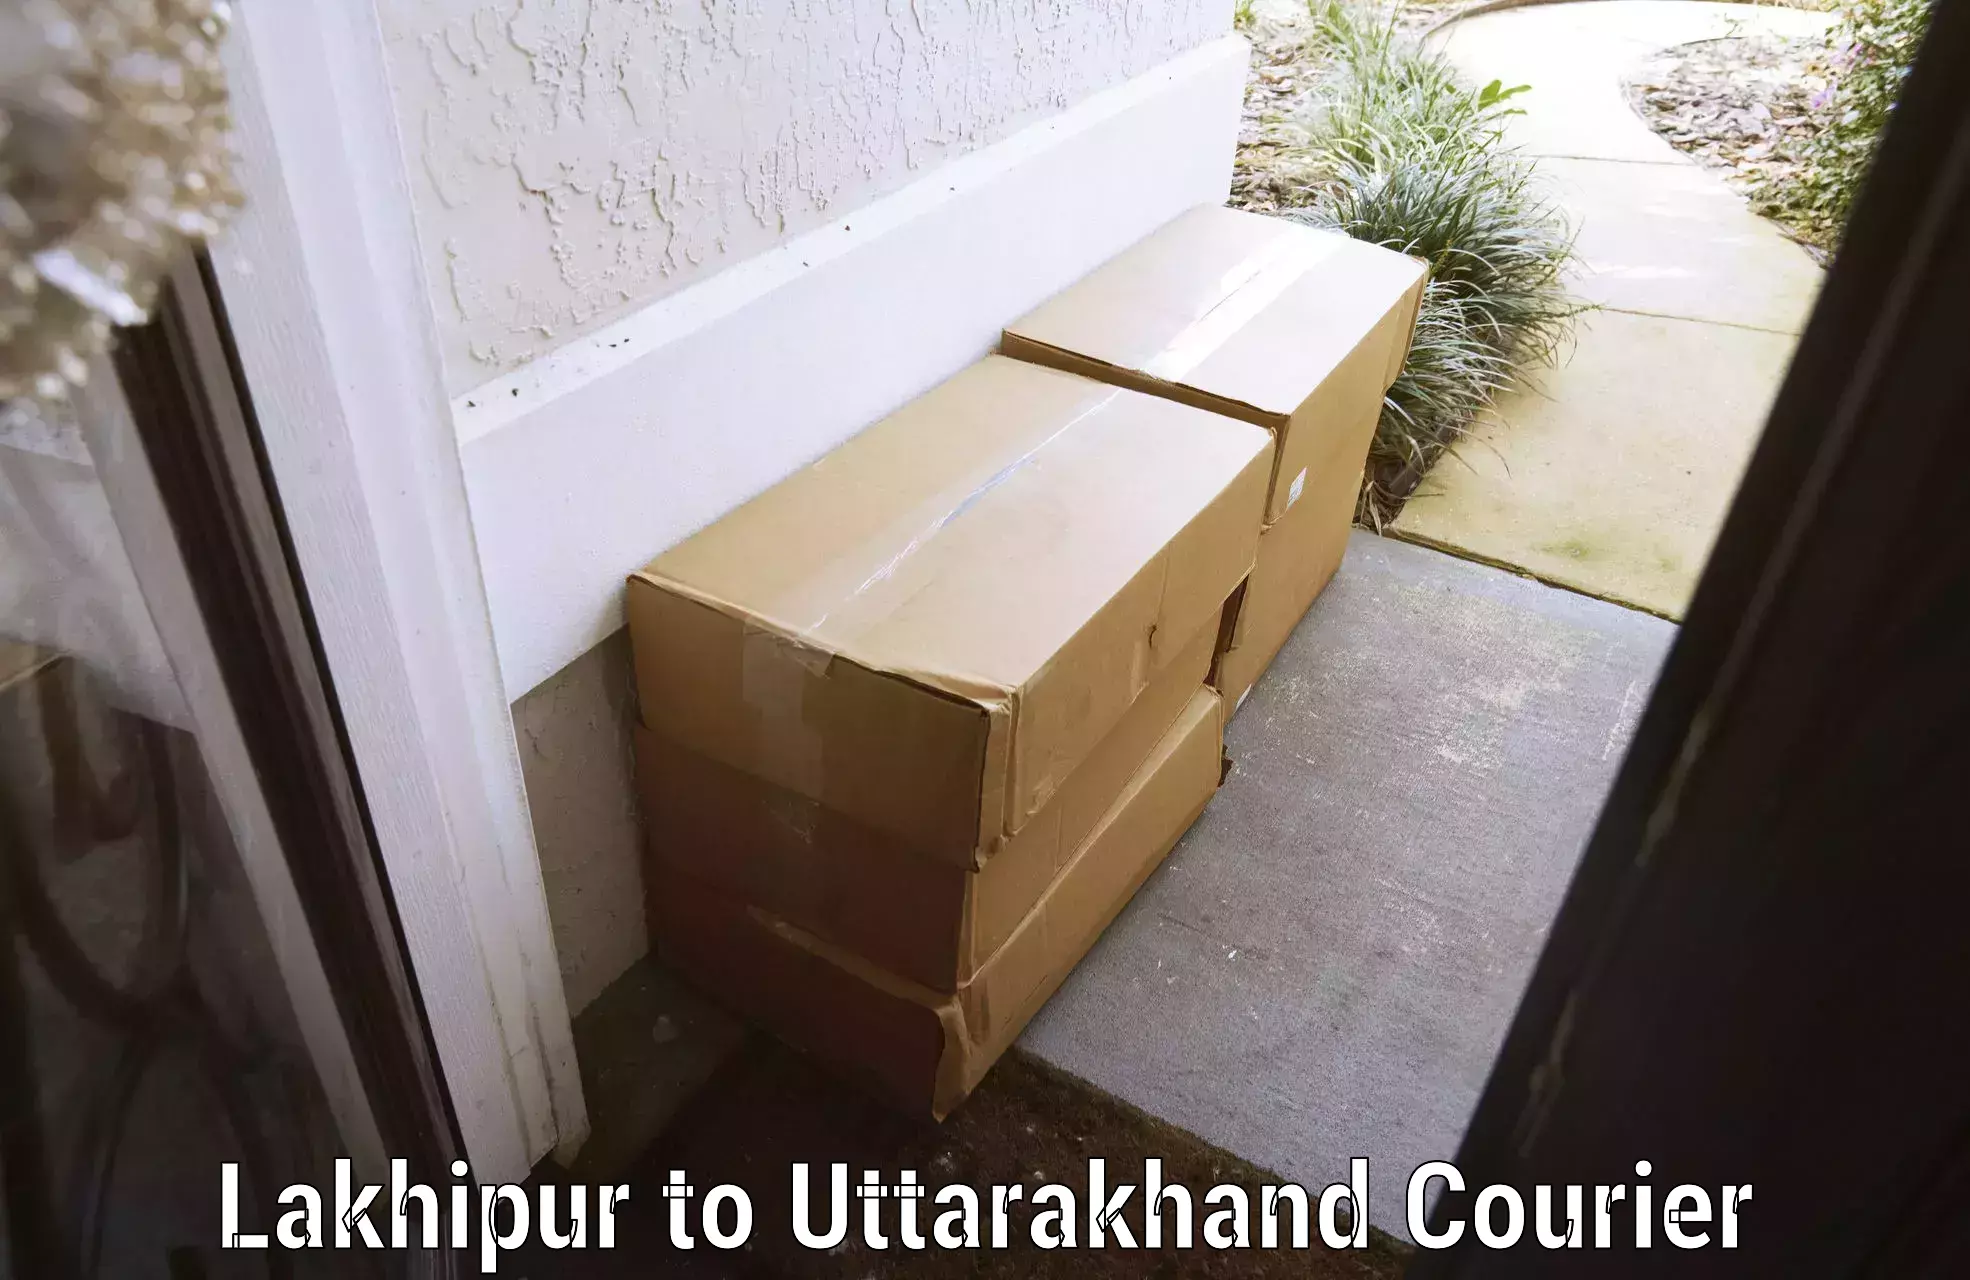 Baggage transport network Lakhipur to Uttarakhand